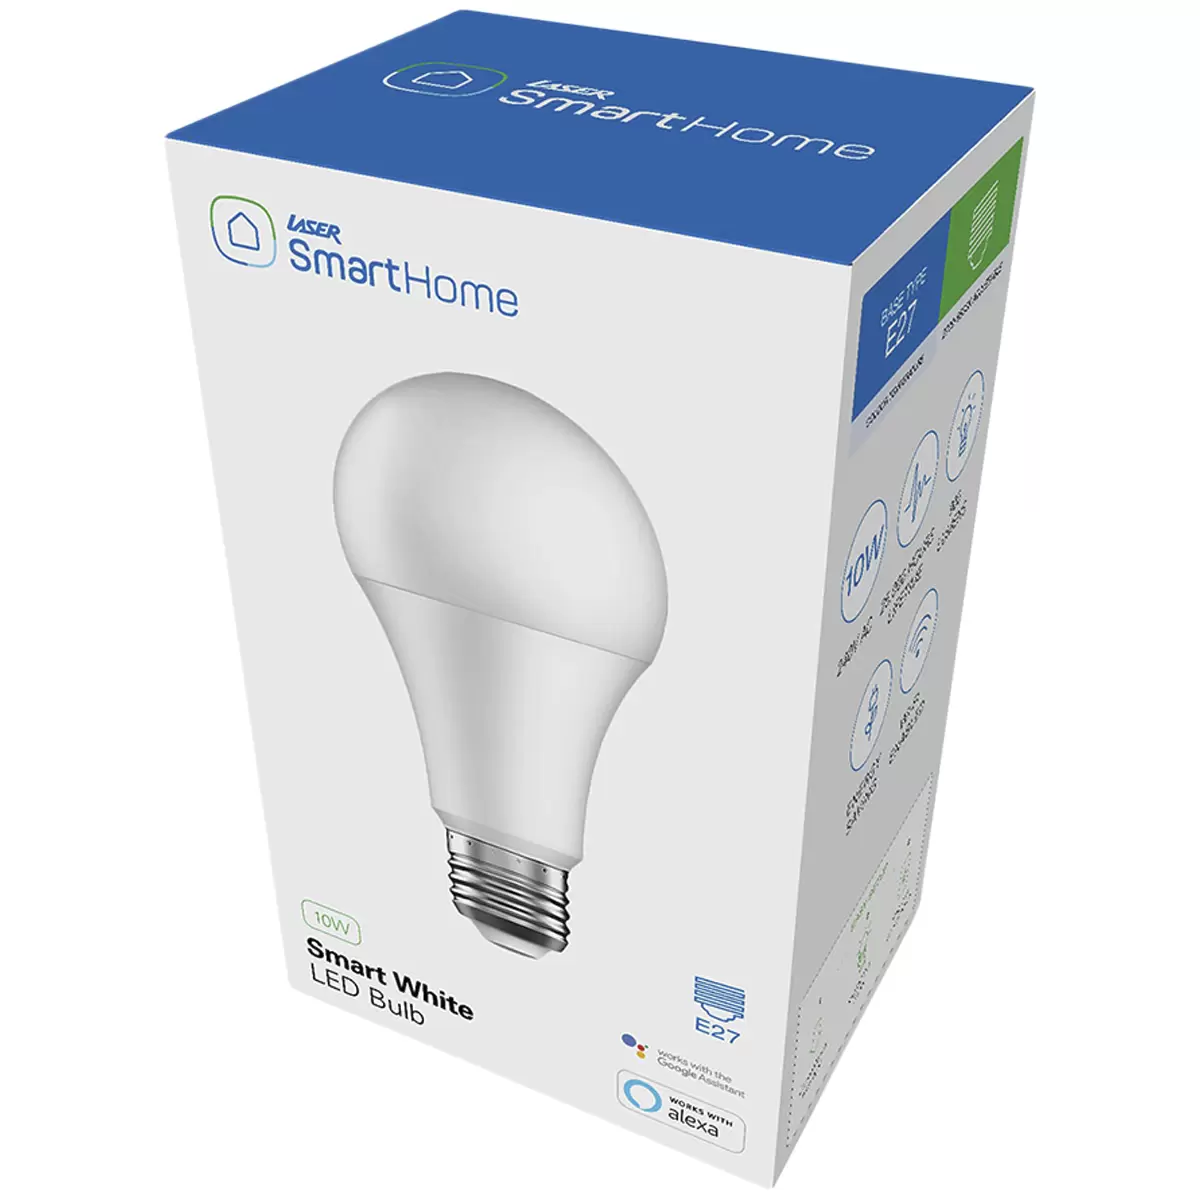 Laser Smart Bulb 10W E27 White 8 Pack